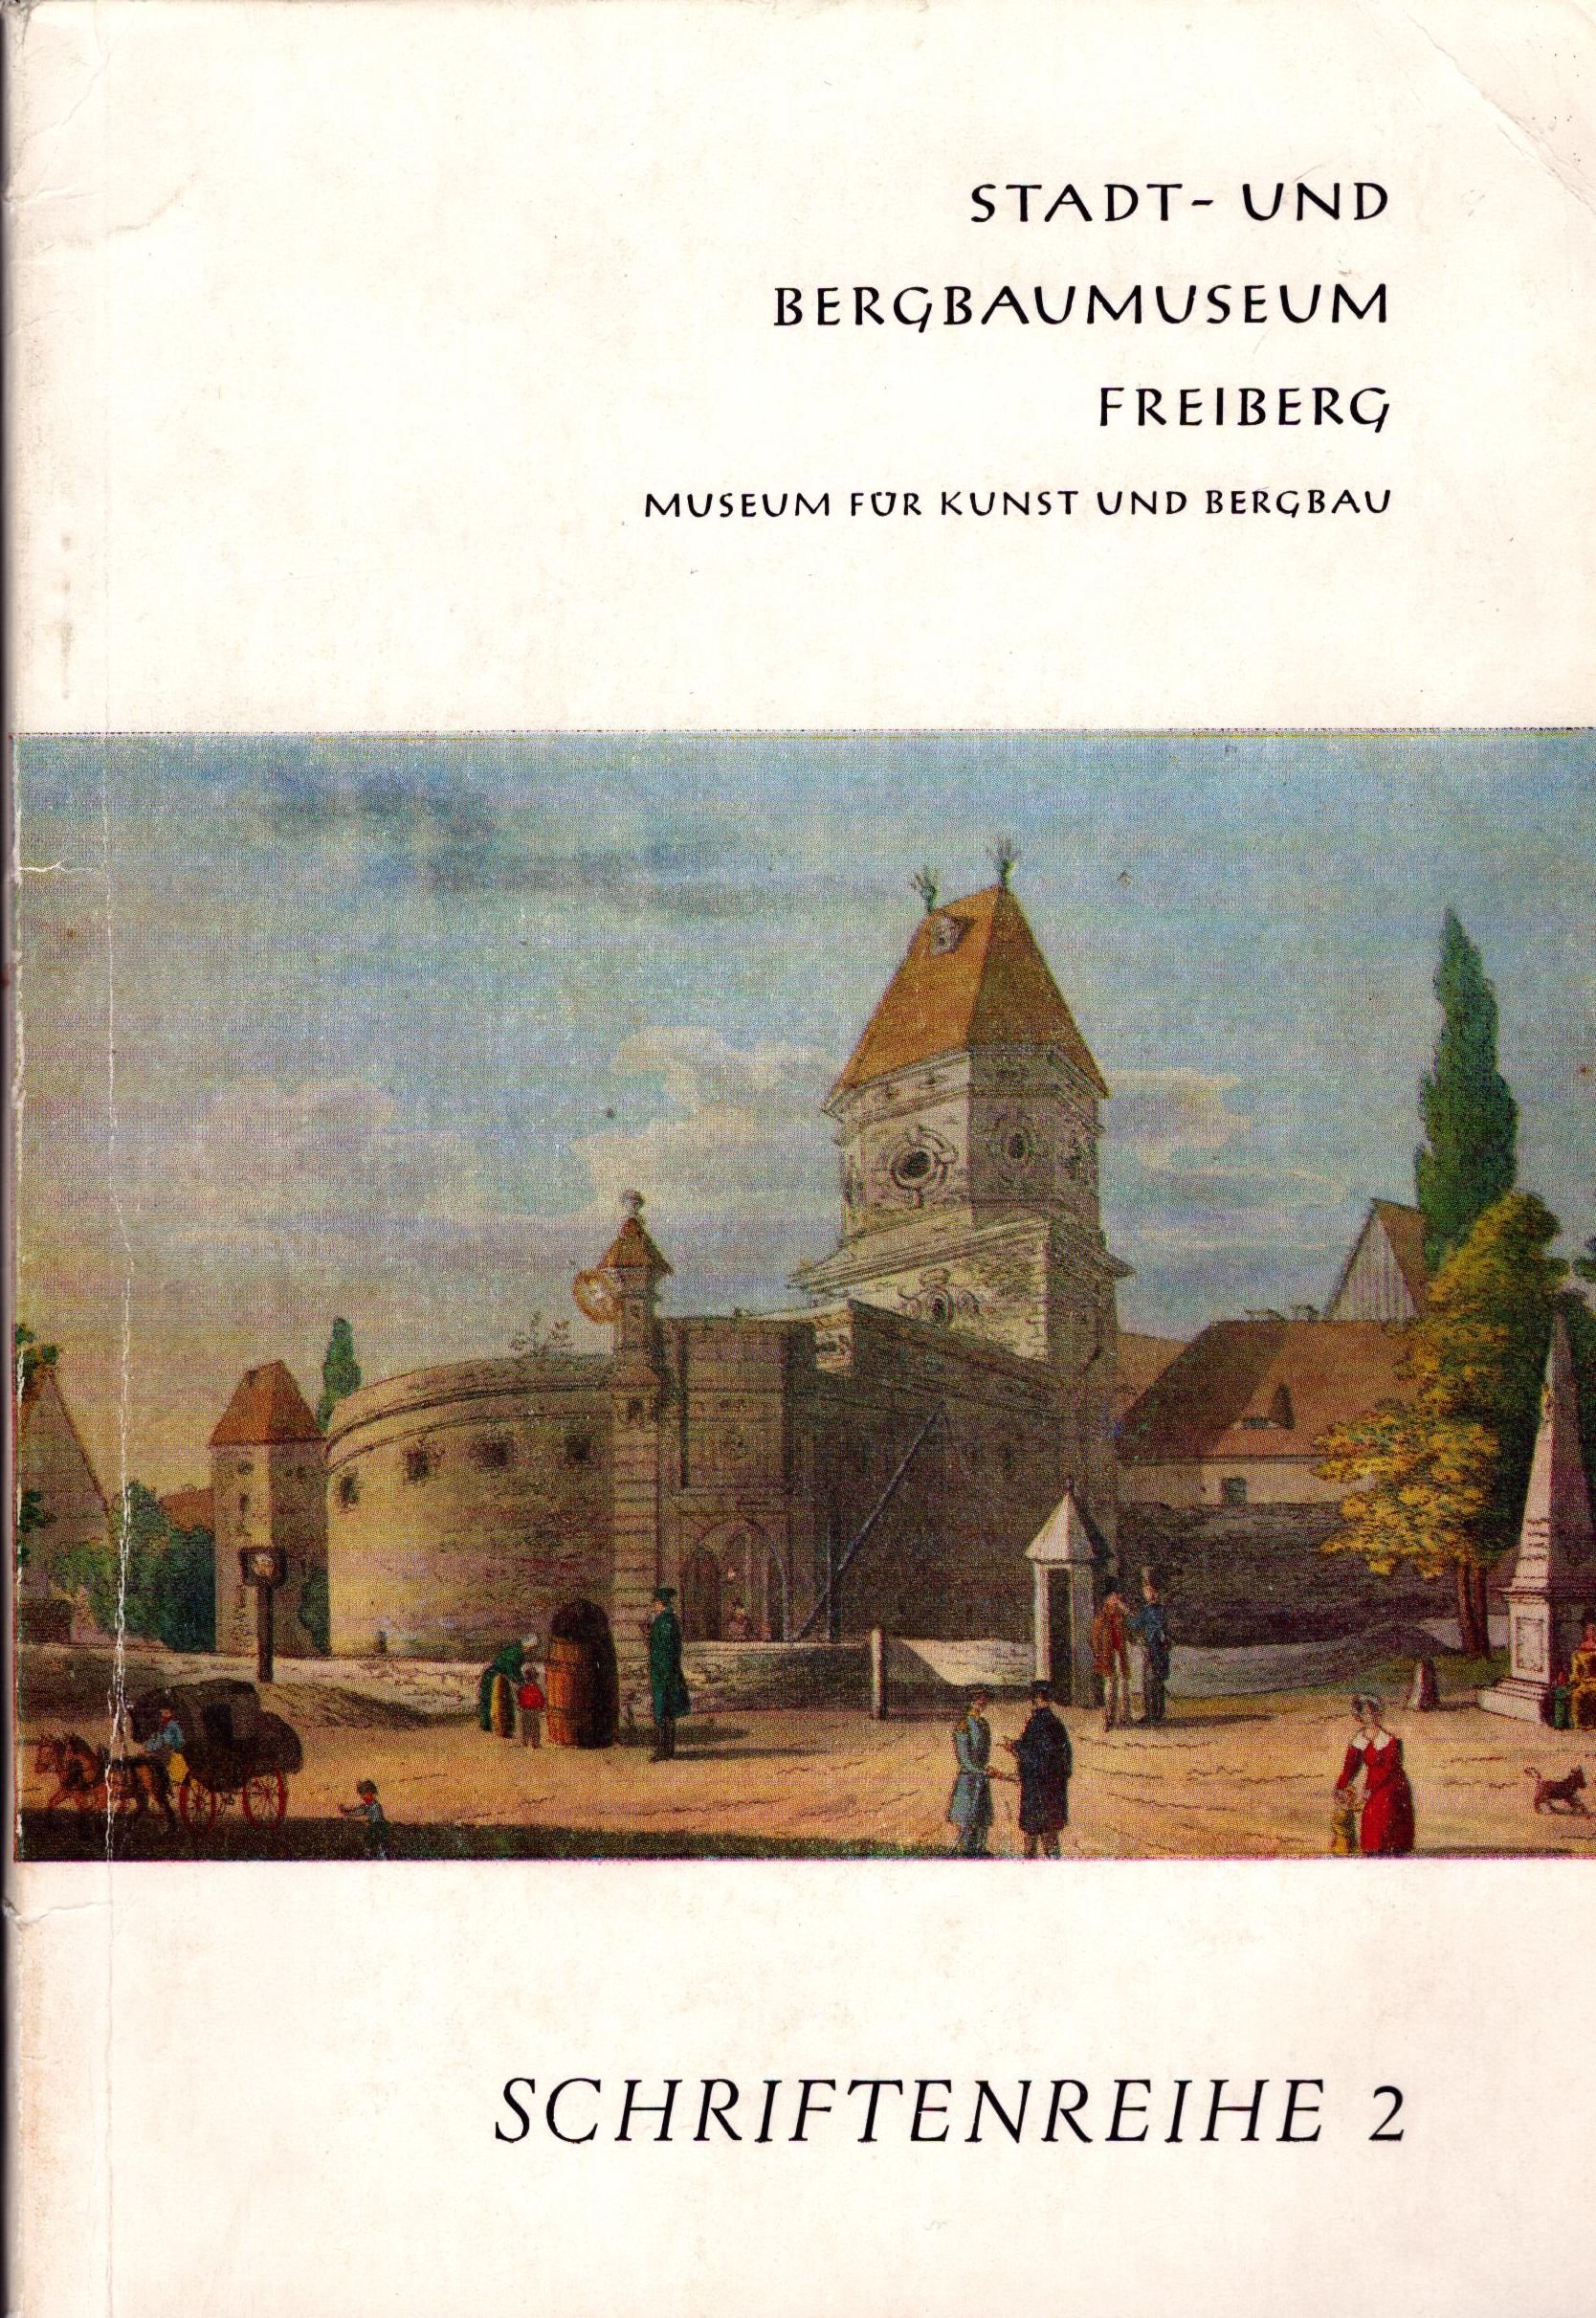 Stadt- und Bergbaumuseum Freiberg, Museum für Kunst und Bergbau. Schriftenreihe 2 (Archiv SAXONIA-FREIBERG-STIFTUNG CC BY-NC-SA)